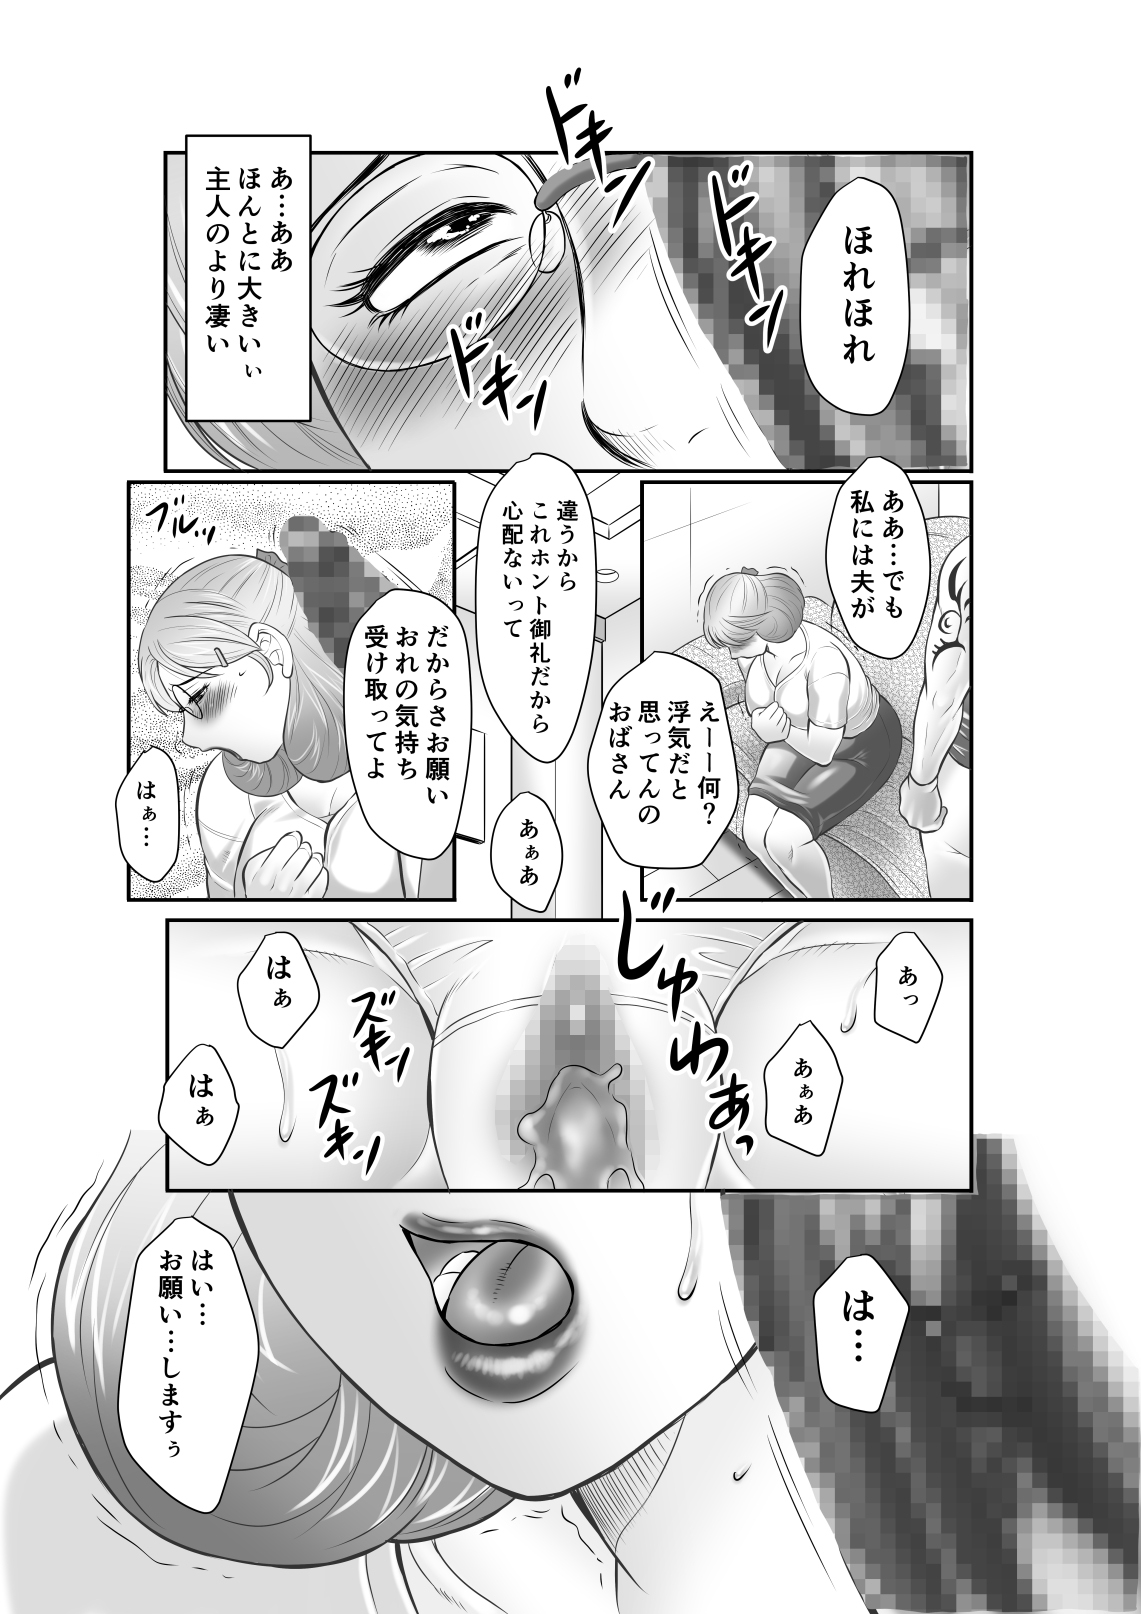 Fuusen Club - Inka no Shizuku Nikubenki Sayako 35sai vol.1 (Dewdrops of the Lewd Flower – Sex Object Sayako, Age 35)